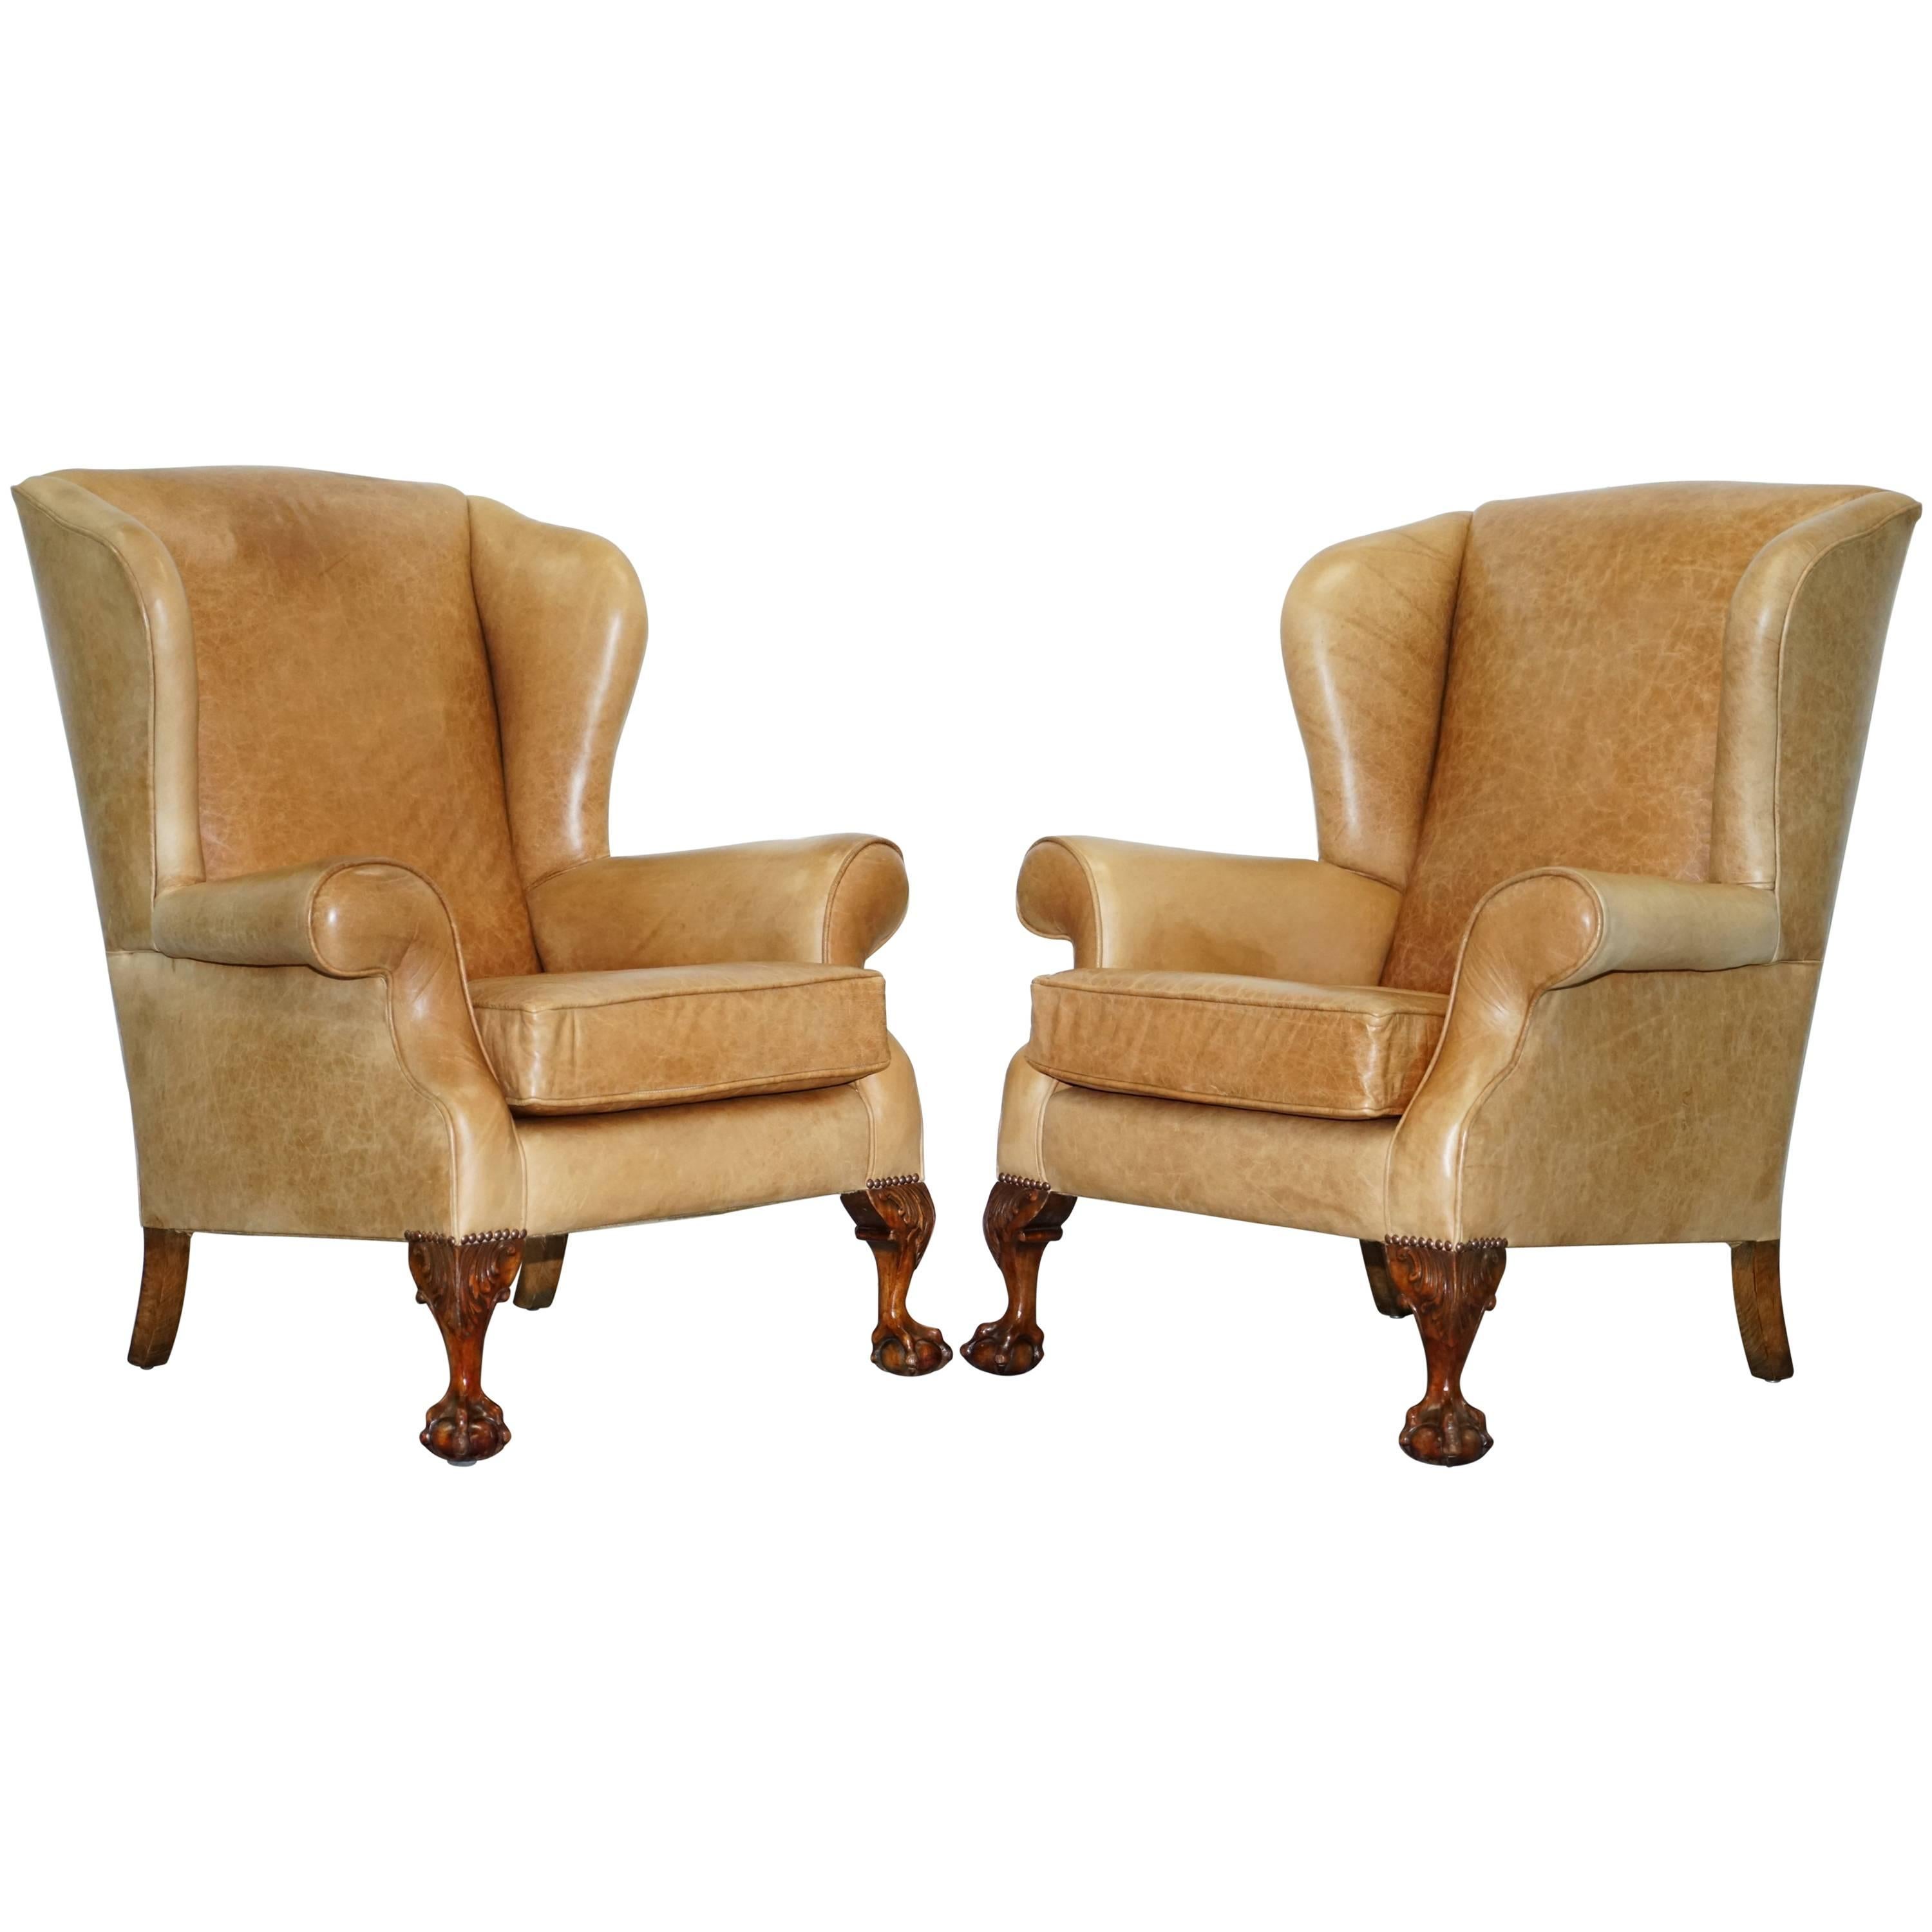 Paar viktorianische Sessel aus Nussbaumholz mit Klauen- und Kugelfüßen aus gealtertem braunem Leder